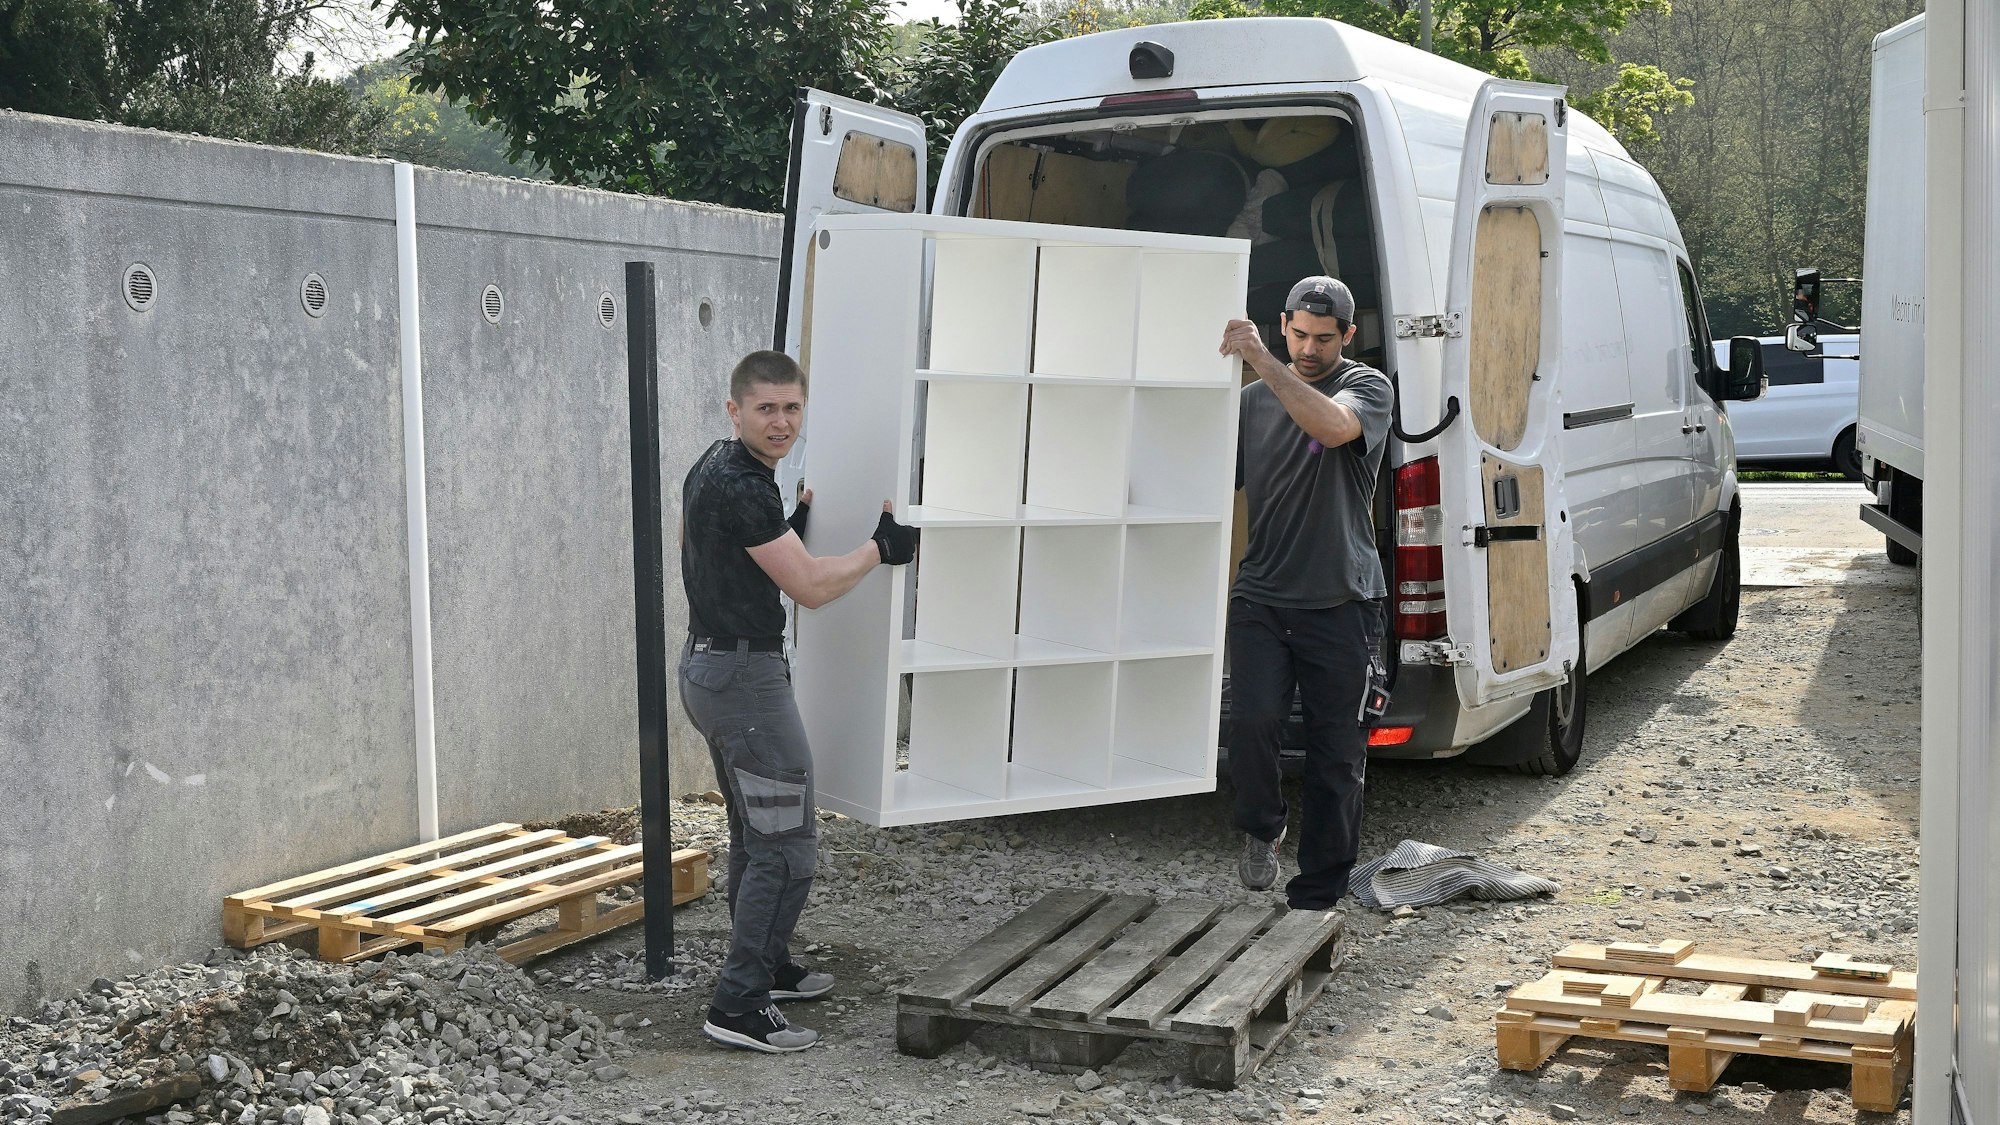 Der Umzug der Kita Kobolde in die neue Containeranlage. Zwei Männer laden ein Regal aus einem Lieferwagen aus.